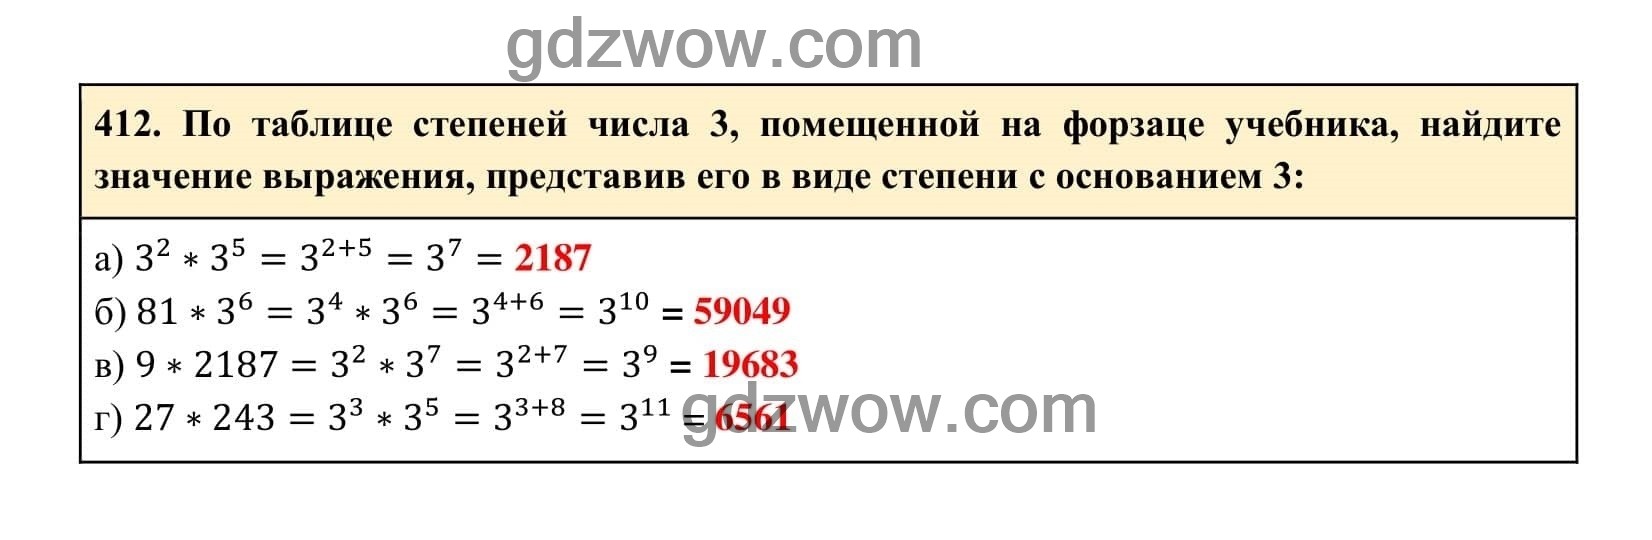 Упражнение 412 - ГДЗ по Алгебре 7 класс Учебник Макарычев (решебник) - GDZwow